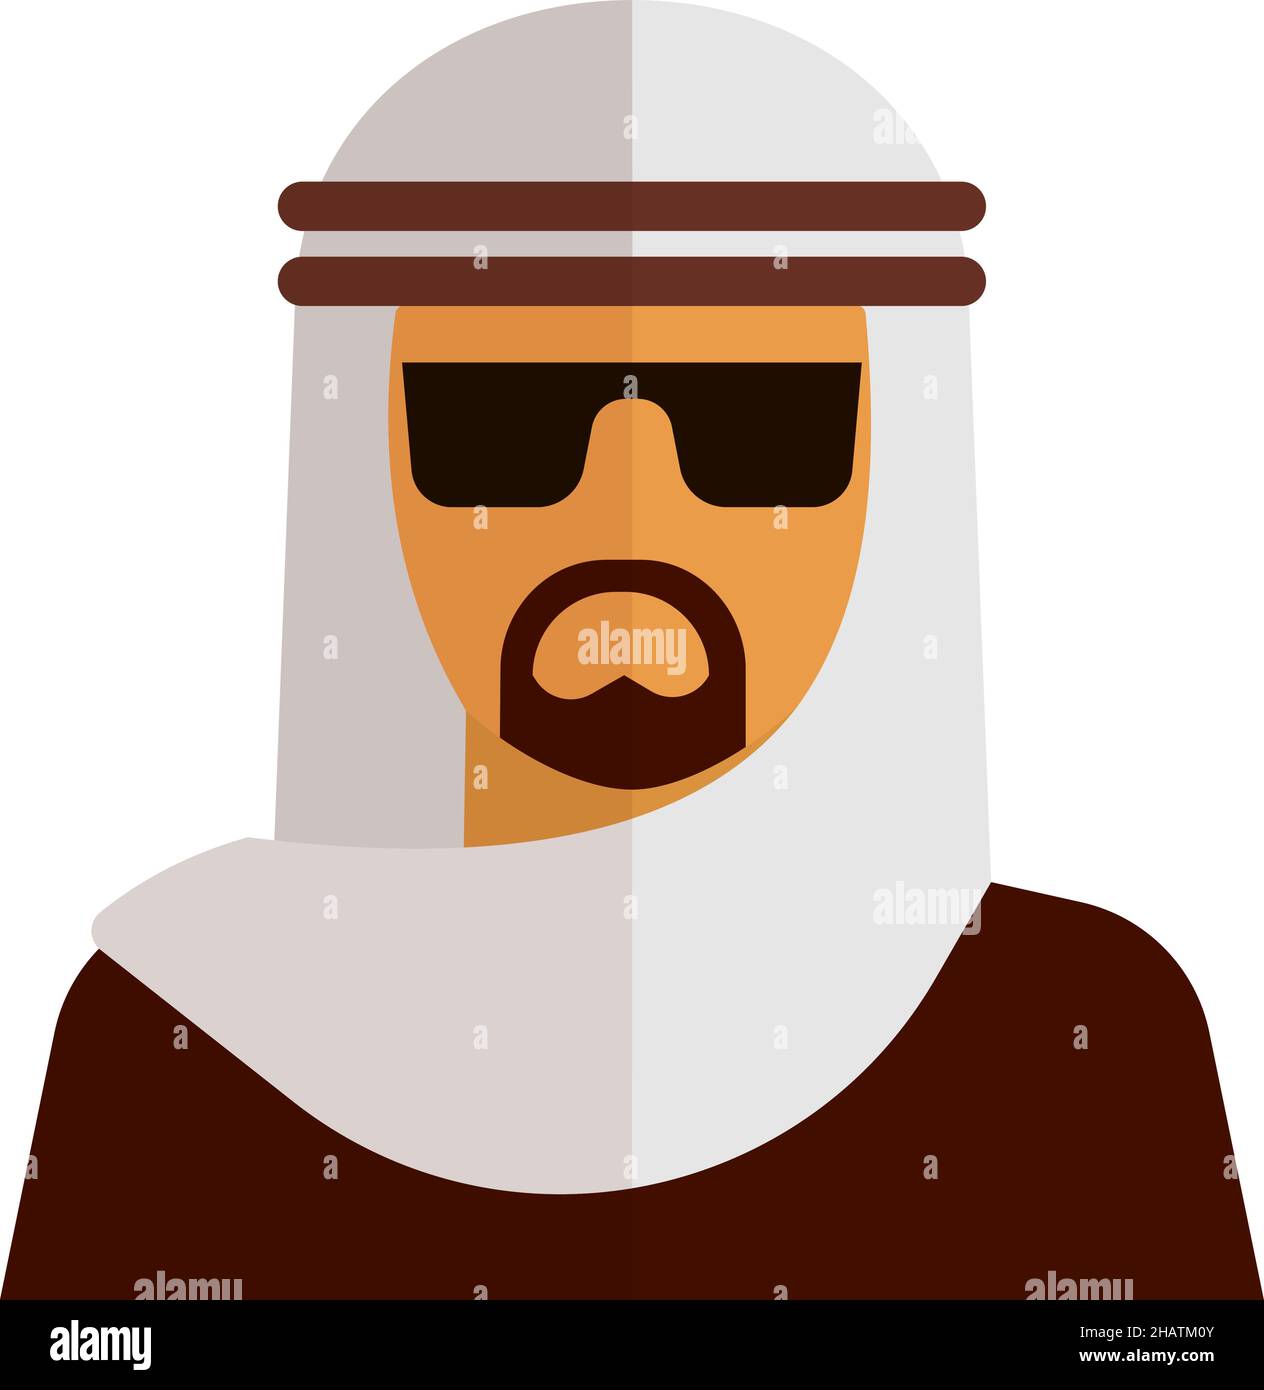 Avatar des muslimischen Geschäftsmannes. Flache Ikone der arabischen Person Stock Vektor